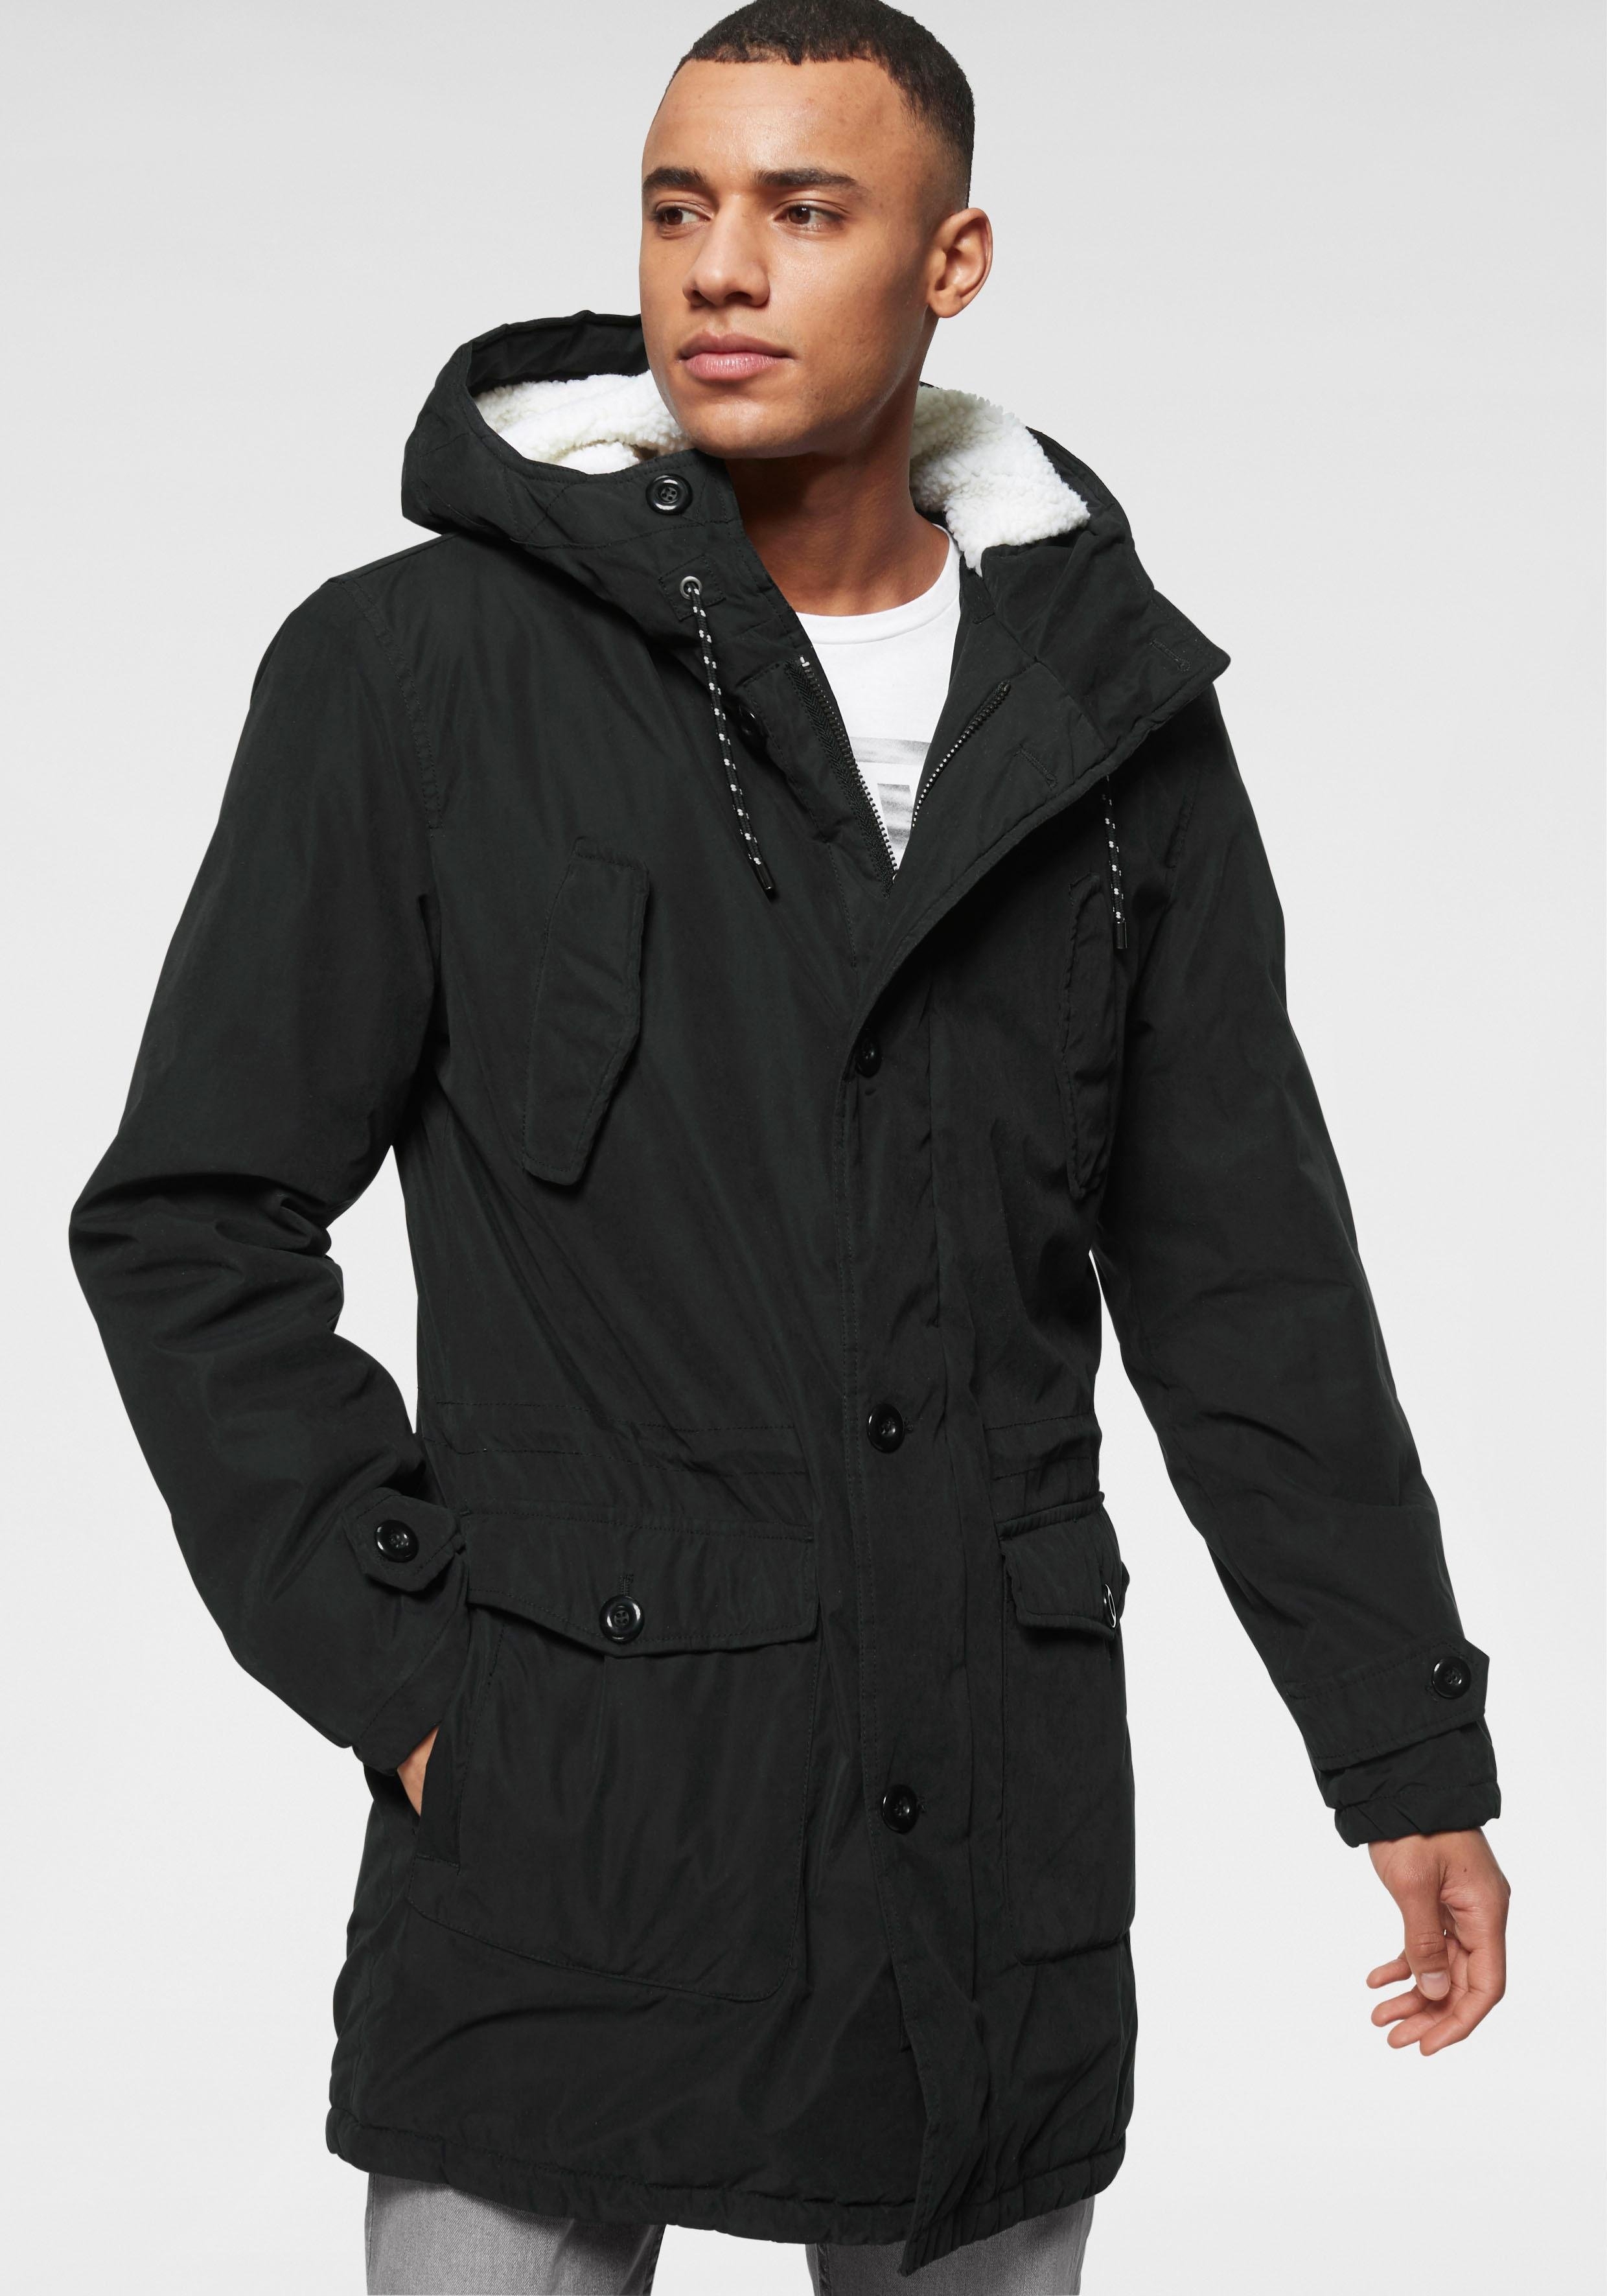 Super Een winterjas voor heren kopen? Vind de jas die bij jou past! | OTTO ZP-08